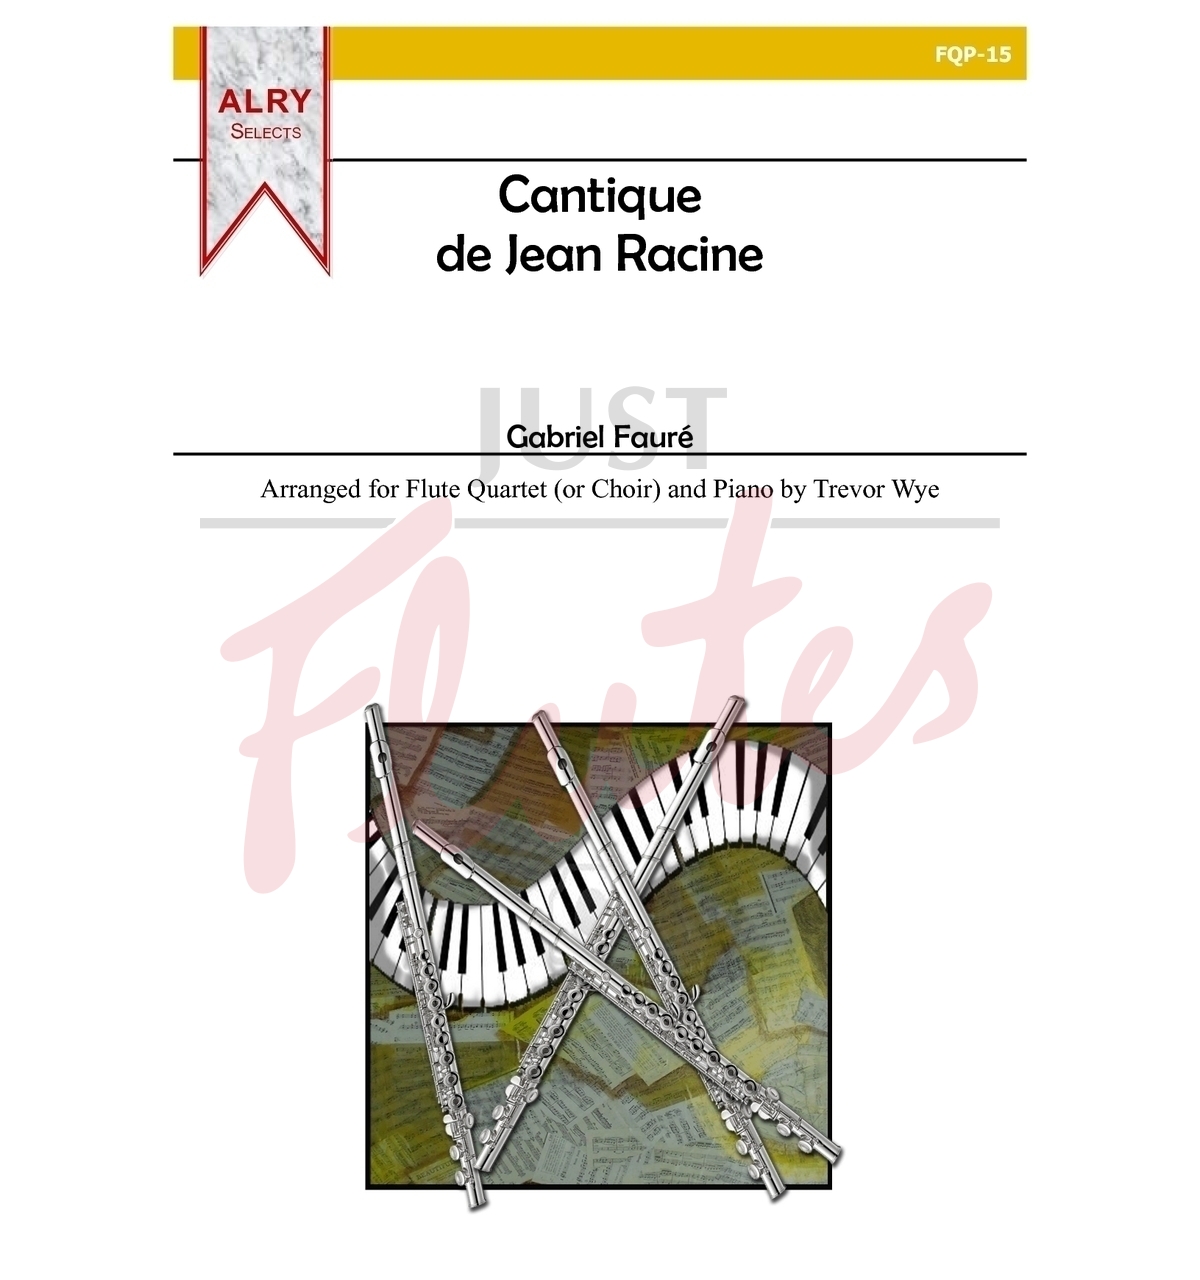 Cantique de Jean Racine for Flute Quartet (or Choir) and Piano